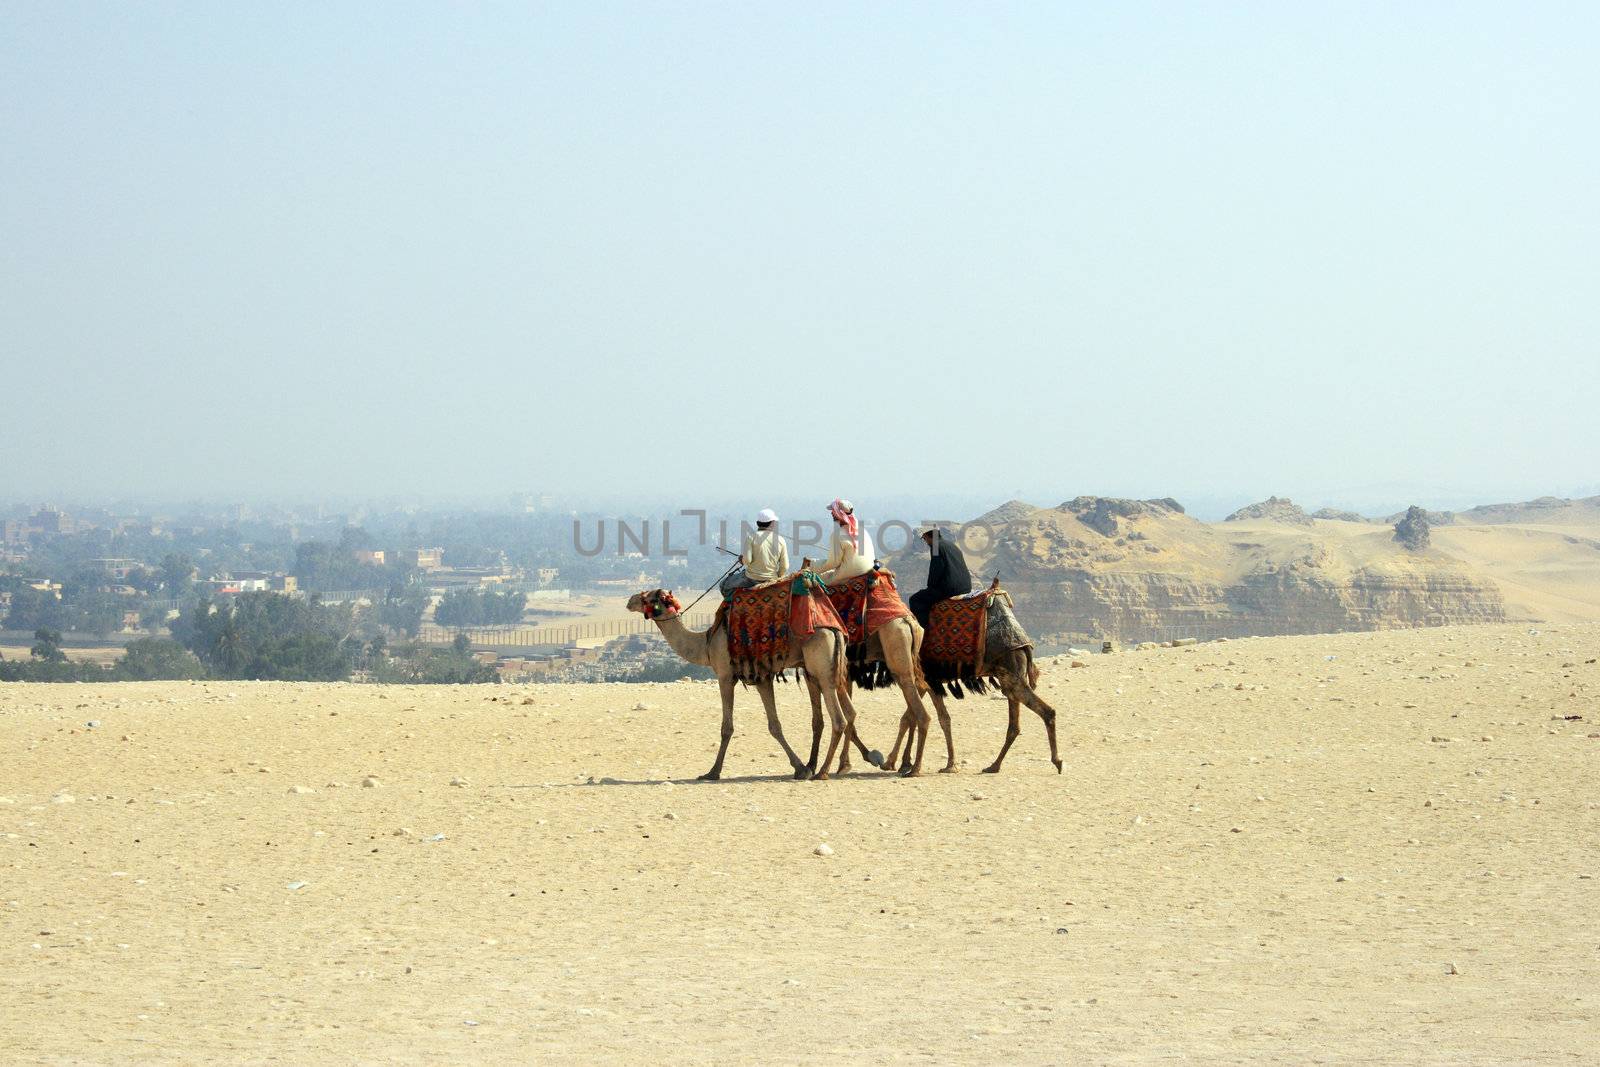 Arabian men in desert on camels by Kudryashka